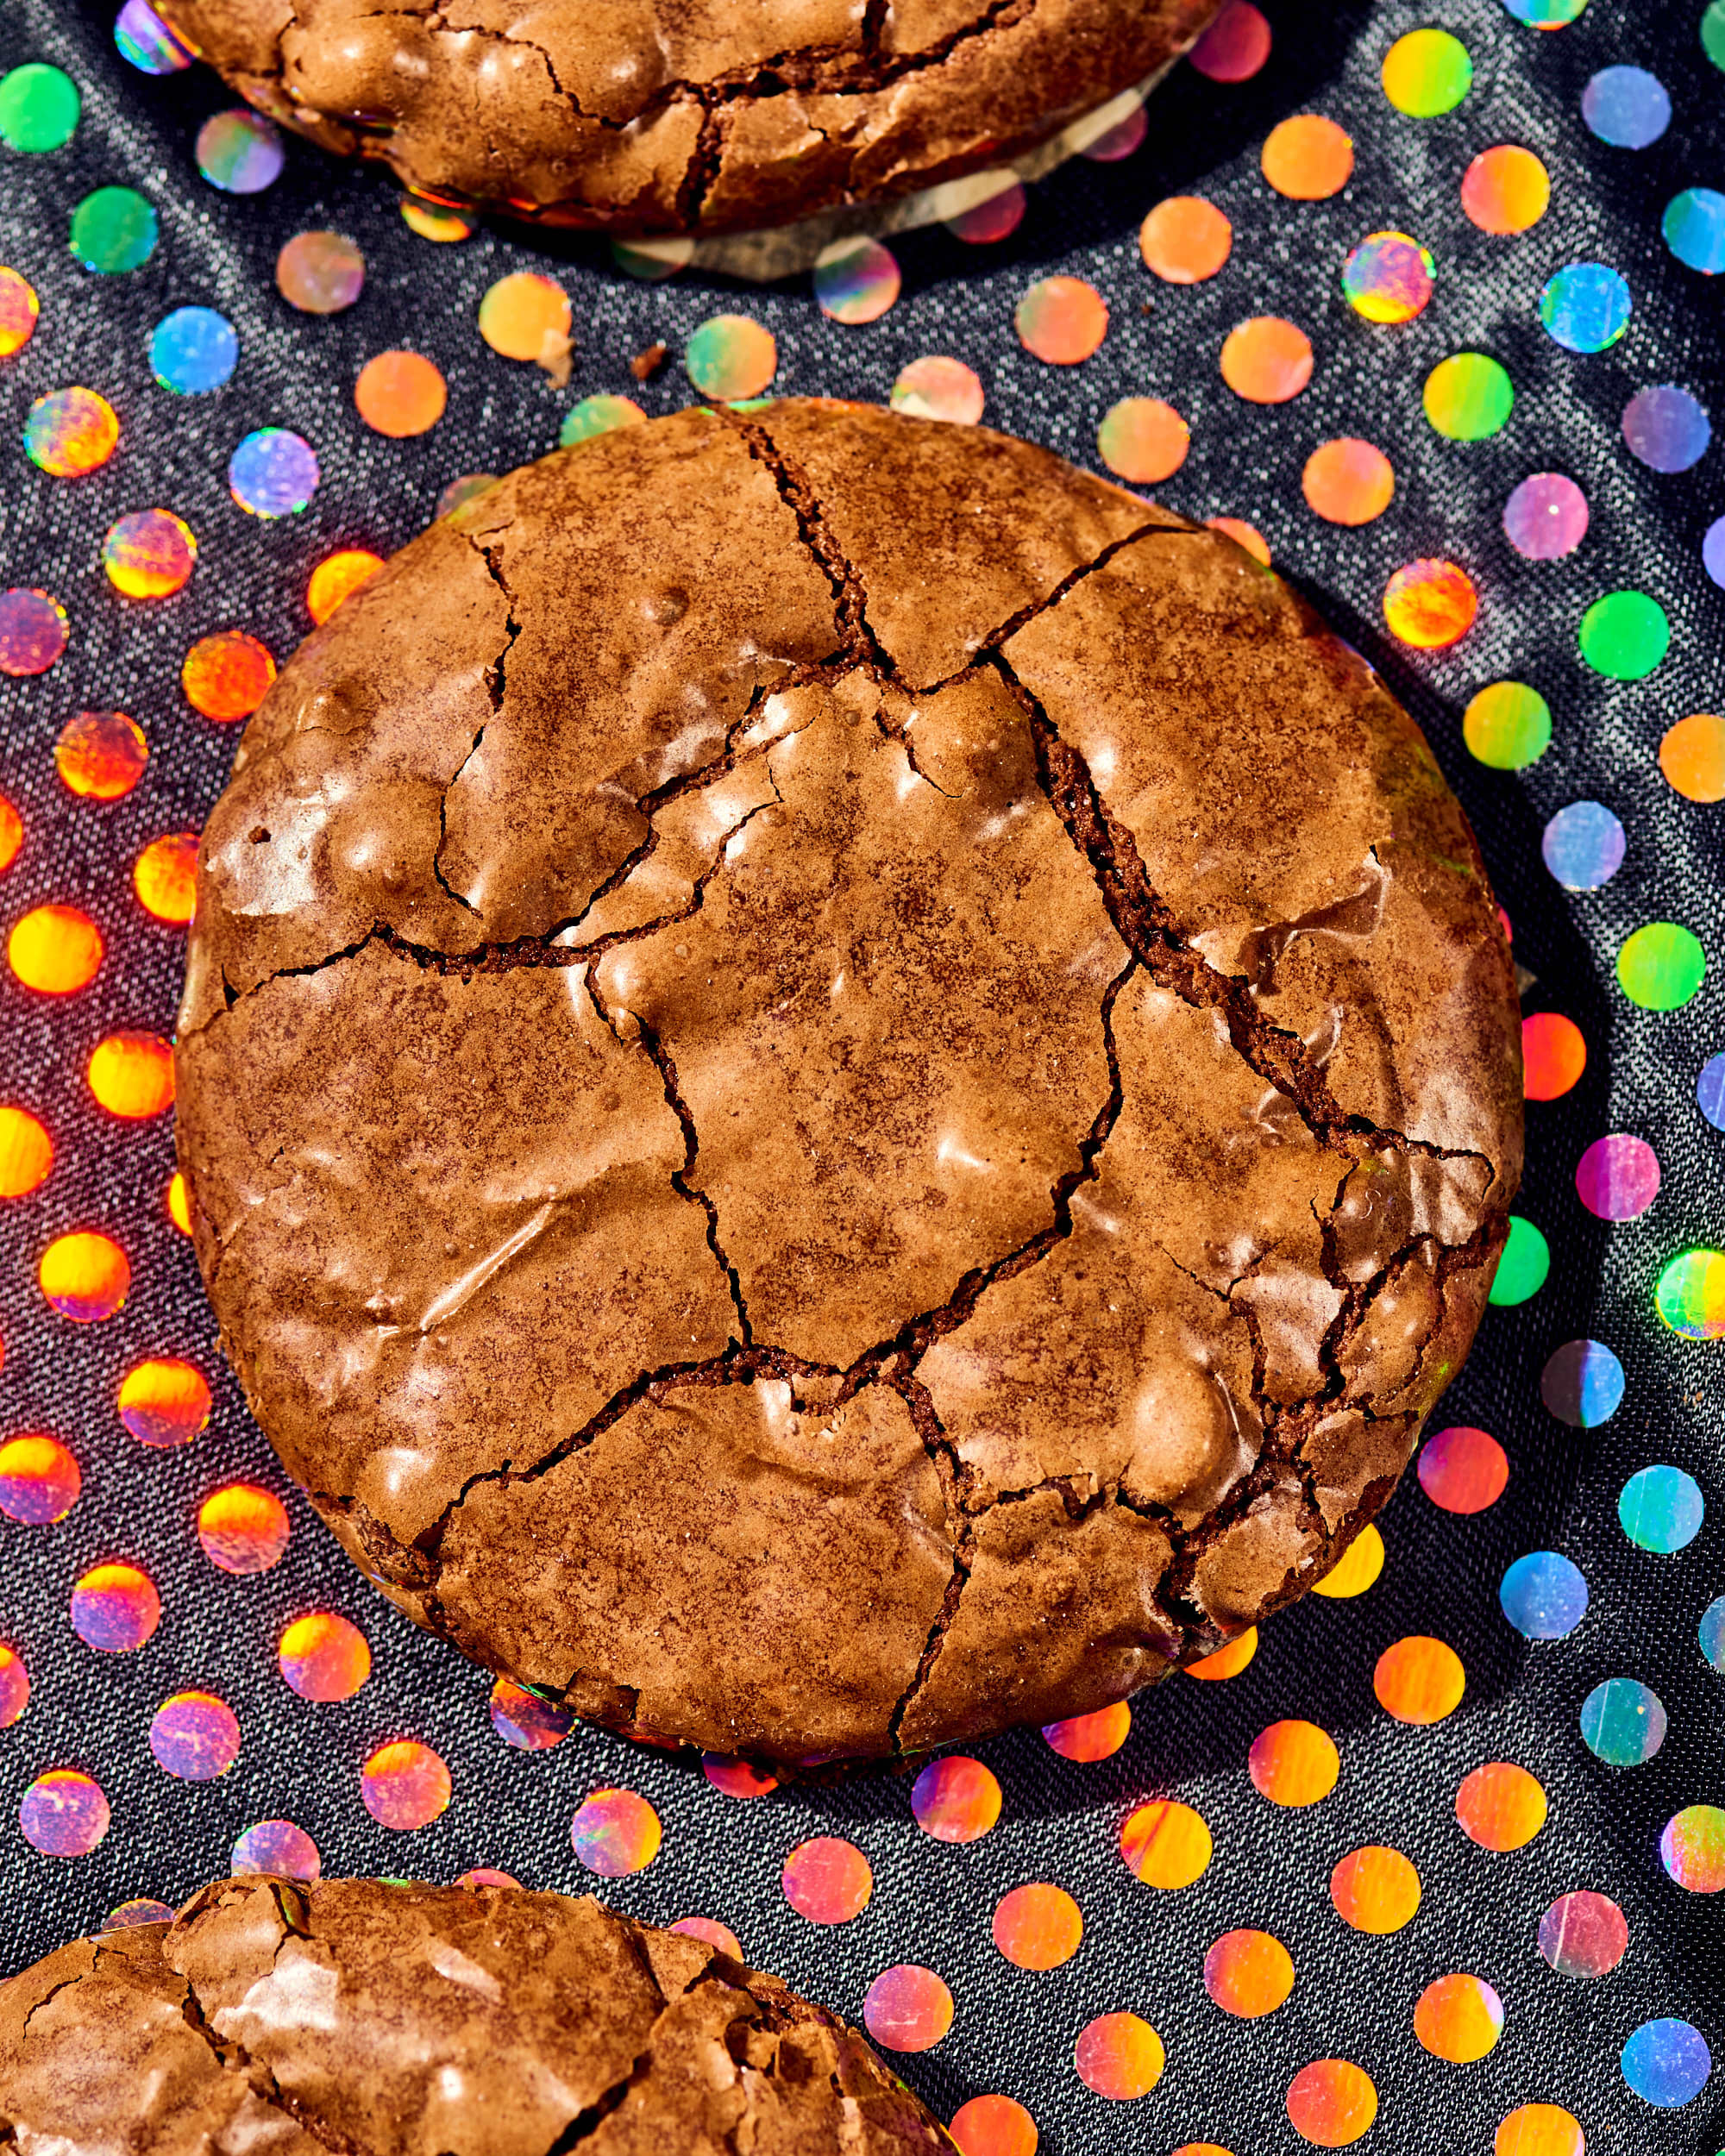 Bonus recipe: Stadium Cake - Easy As Cookies